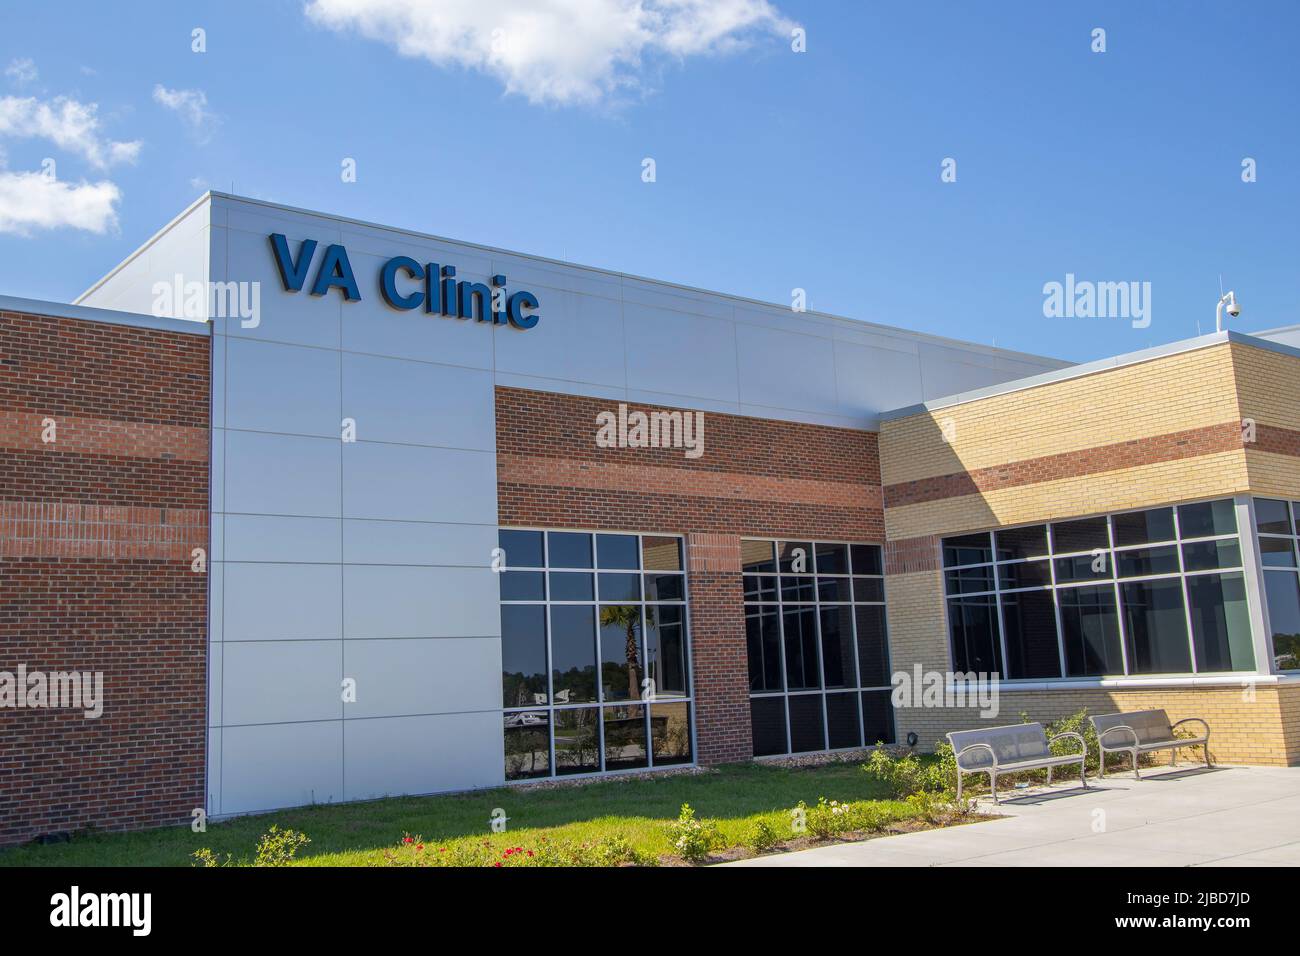 VA clinic in Ocala, Florida Stock Photo